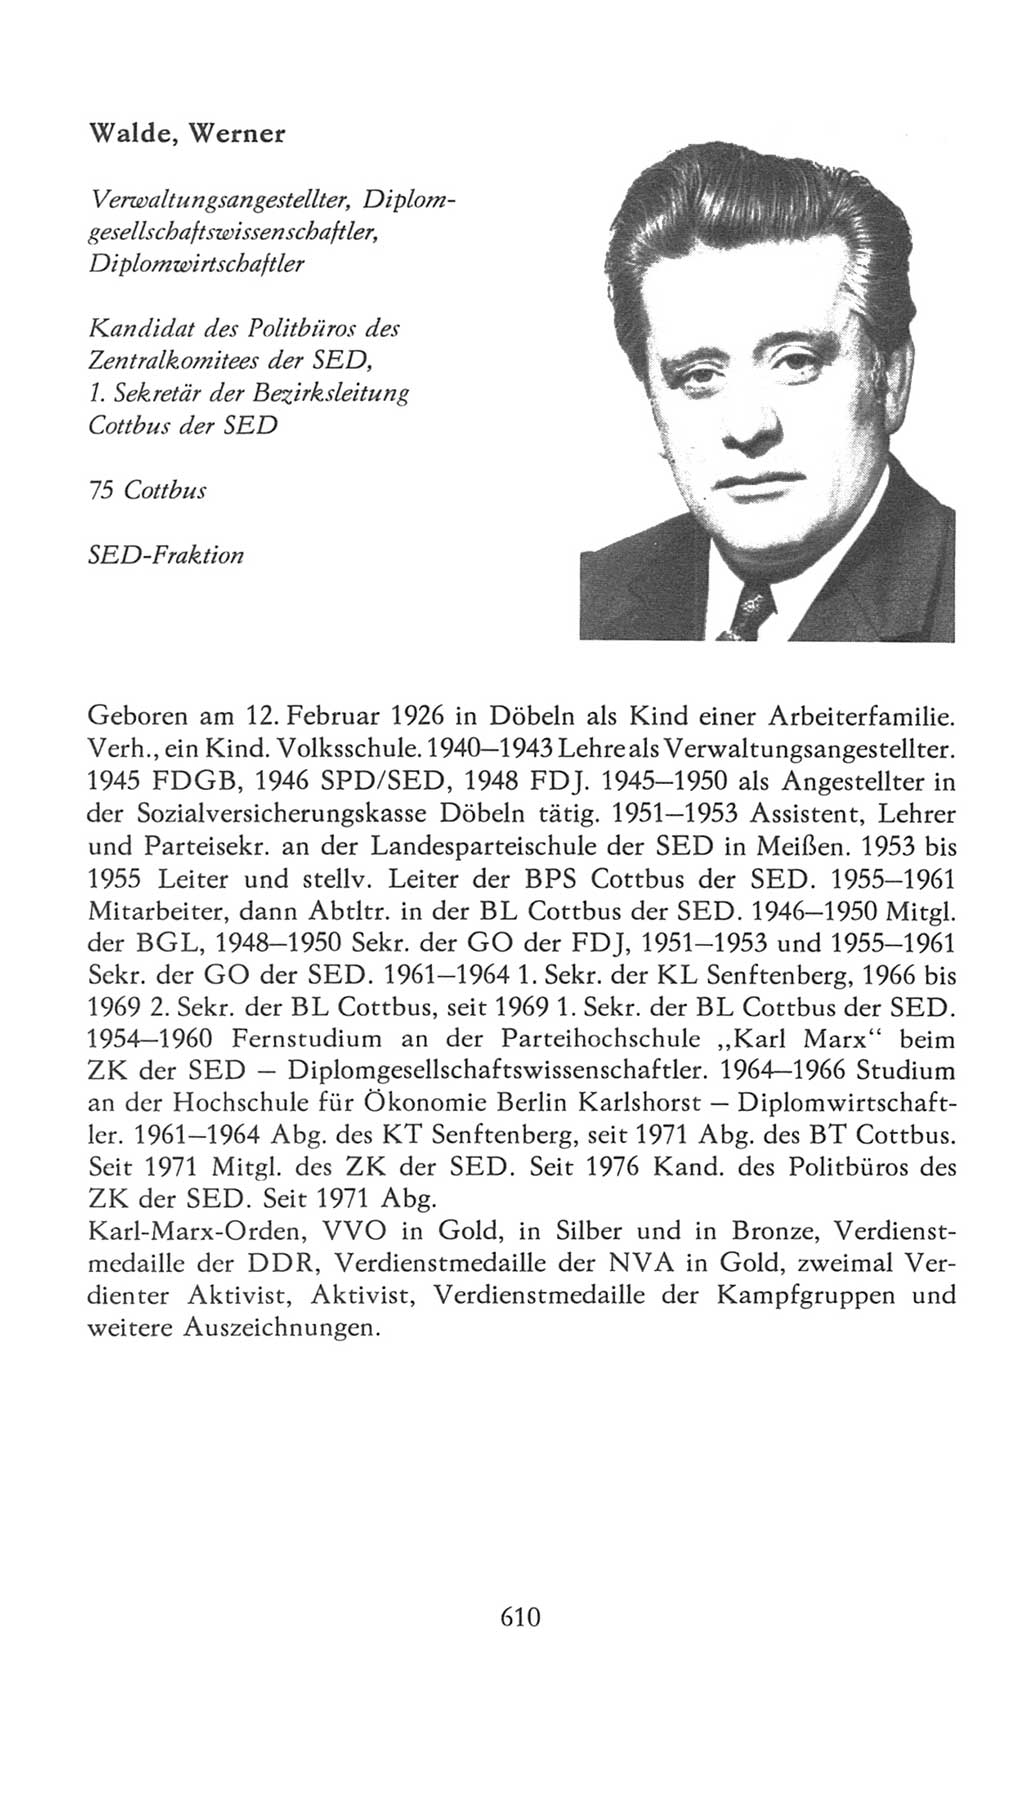 Volkskammer (VK) der Deutschen Demokratischen Republik (DDR), 7. Wahlperiode 1976-1981, Seite 610 (VK. DDR 7. WP. 1976-1981, S. 610)